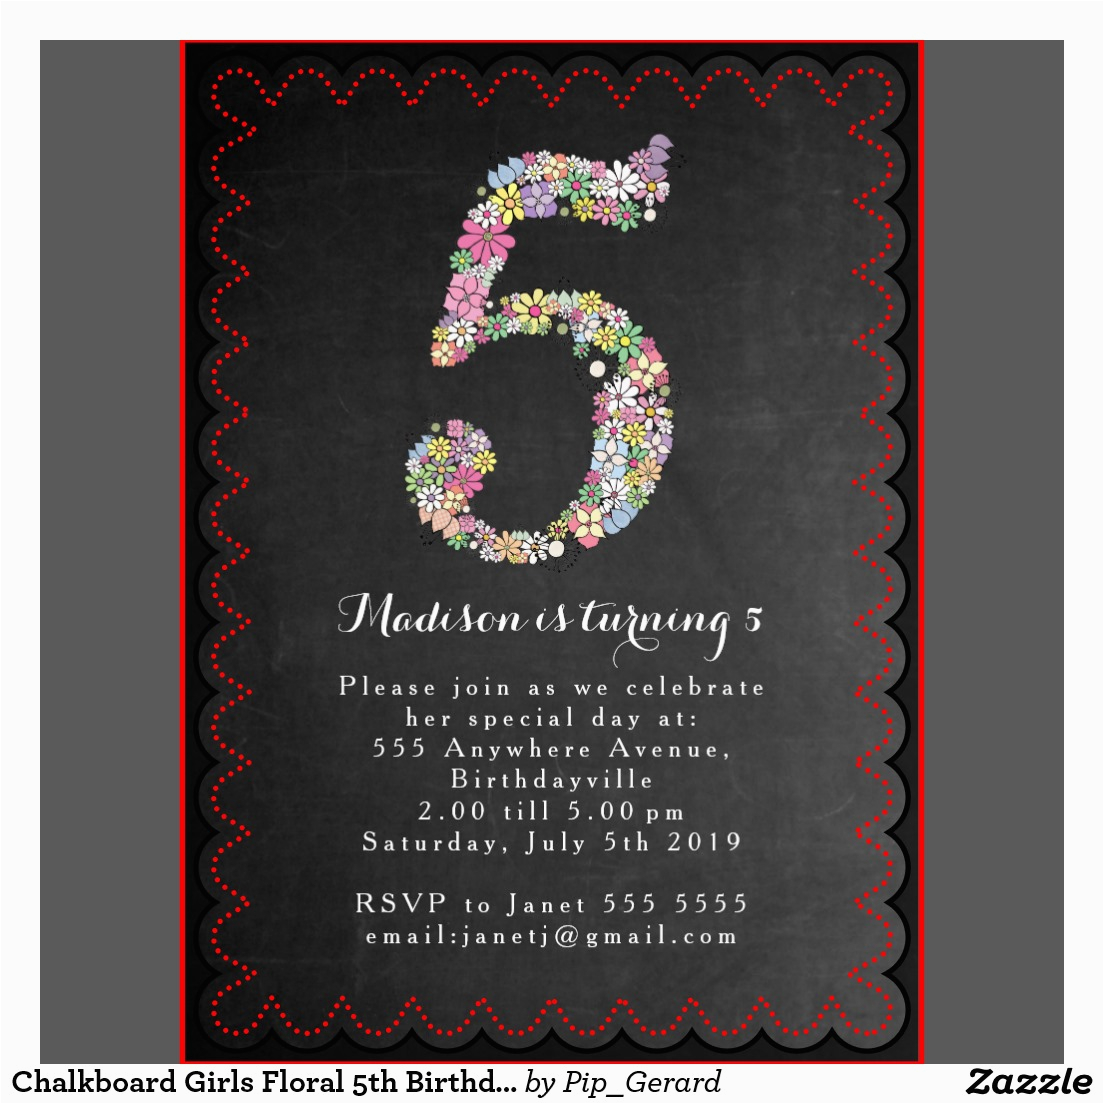 5th birthday party invitation wording dolanpedia